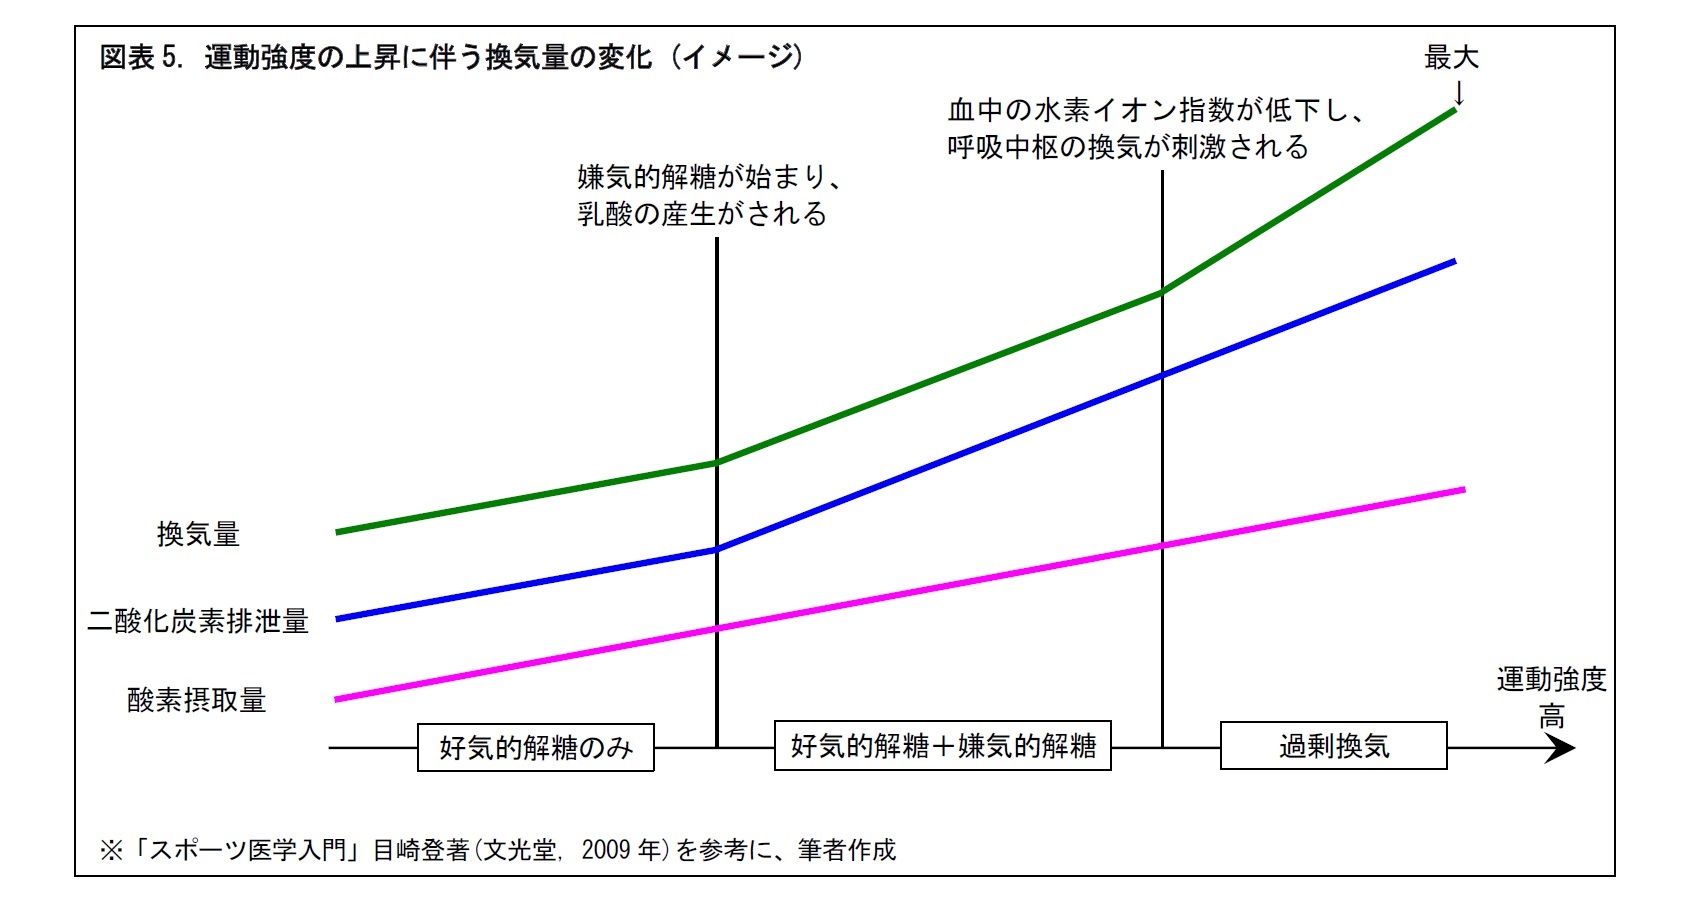 図表5. 運動強度の上昇に伴う換気量の変化 (イメージ)